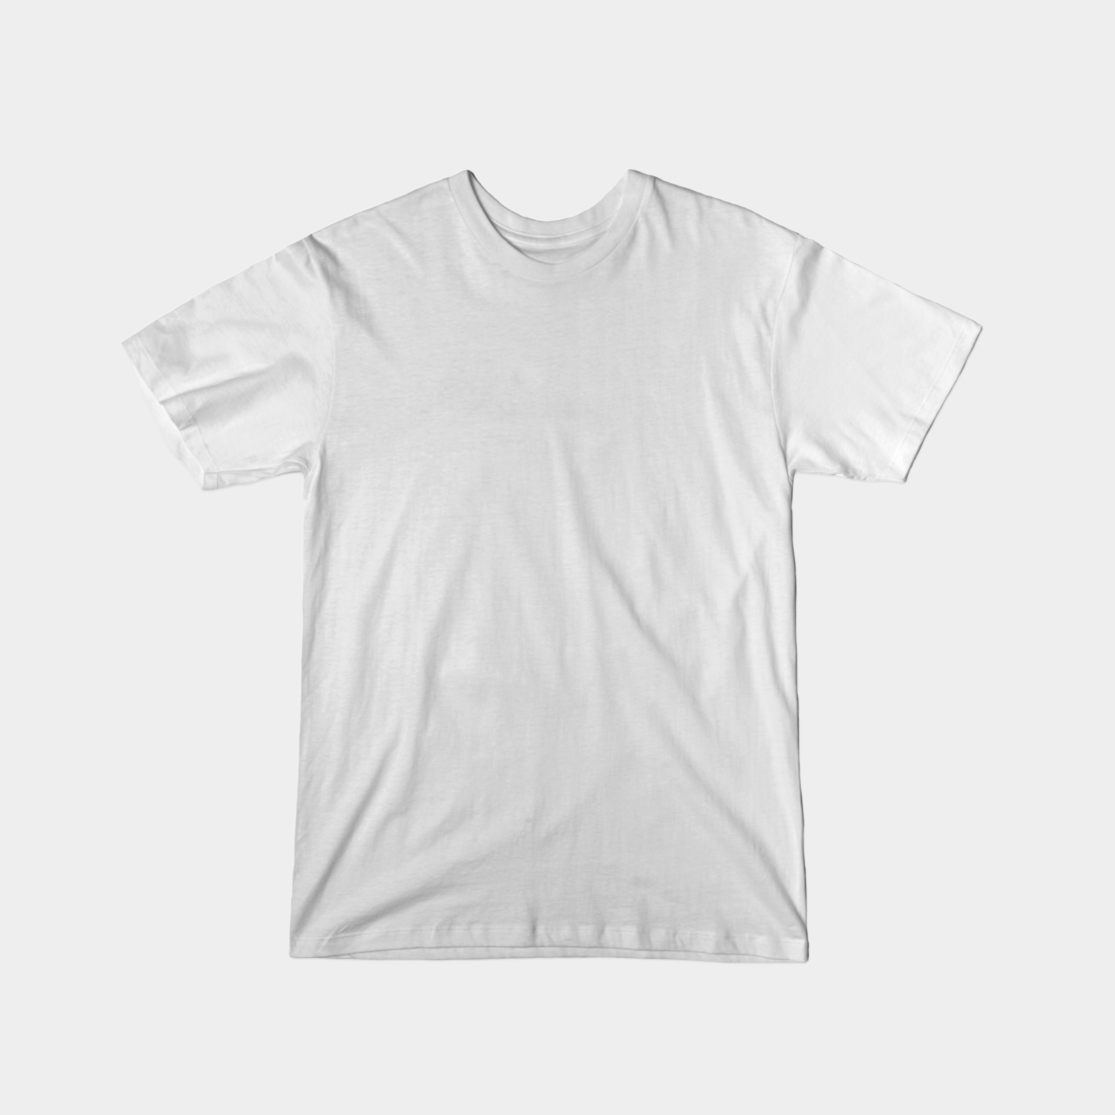 T-shirt (1115x1115)